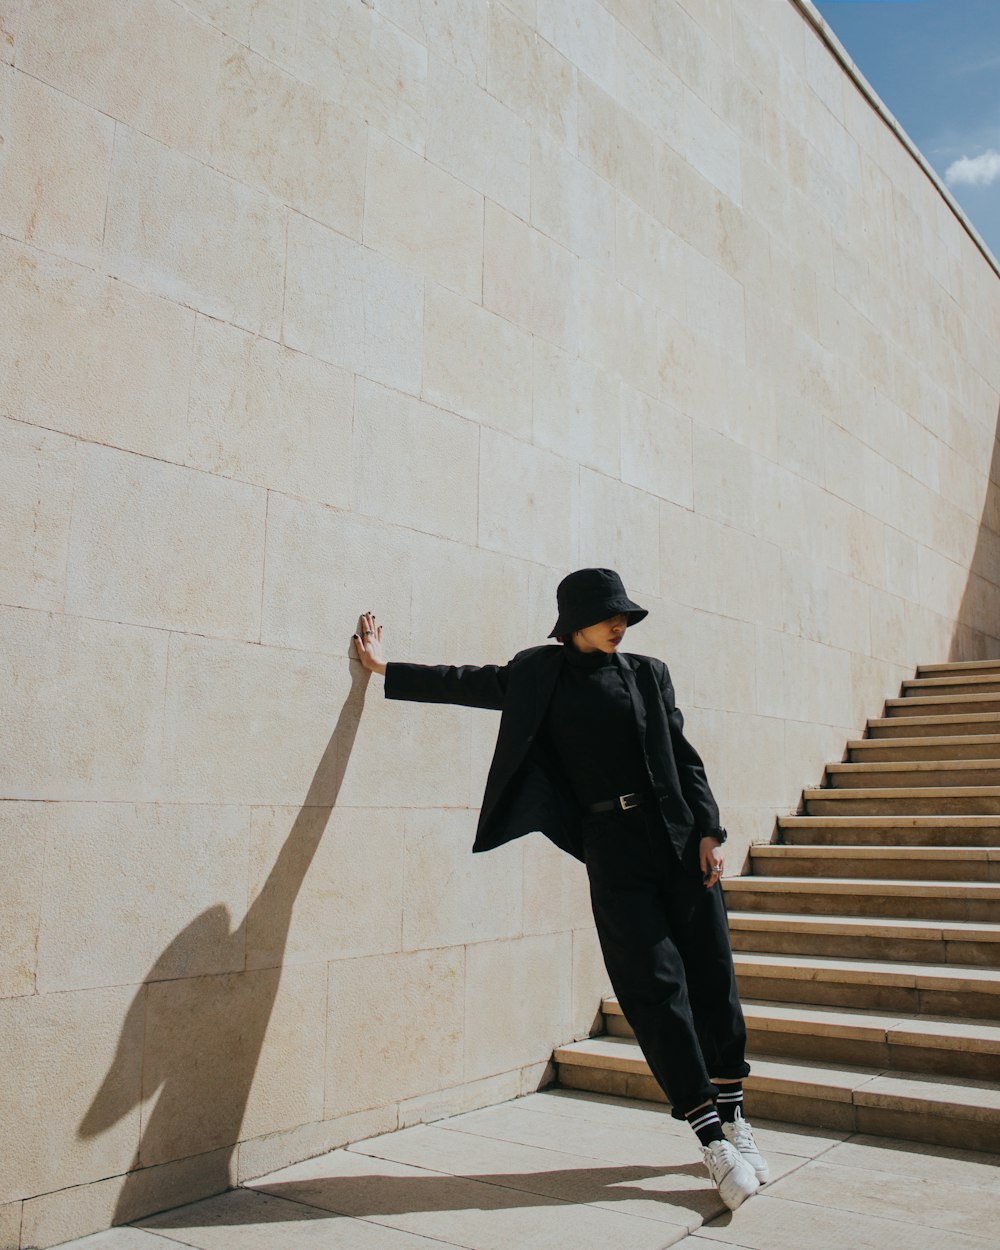 검은 코트와 갈색 바지를 입은 남자가 갈색 콘크리트 계단에 서 있다